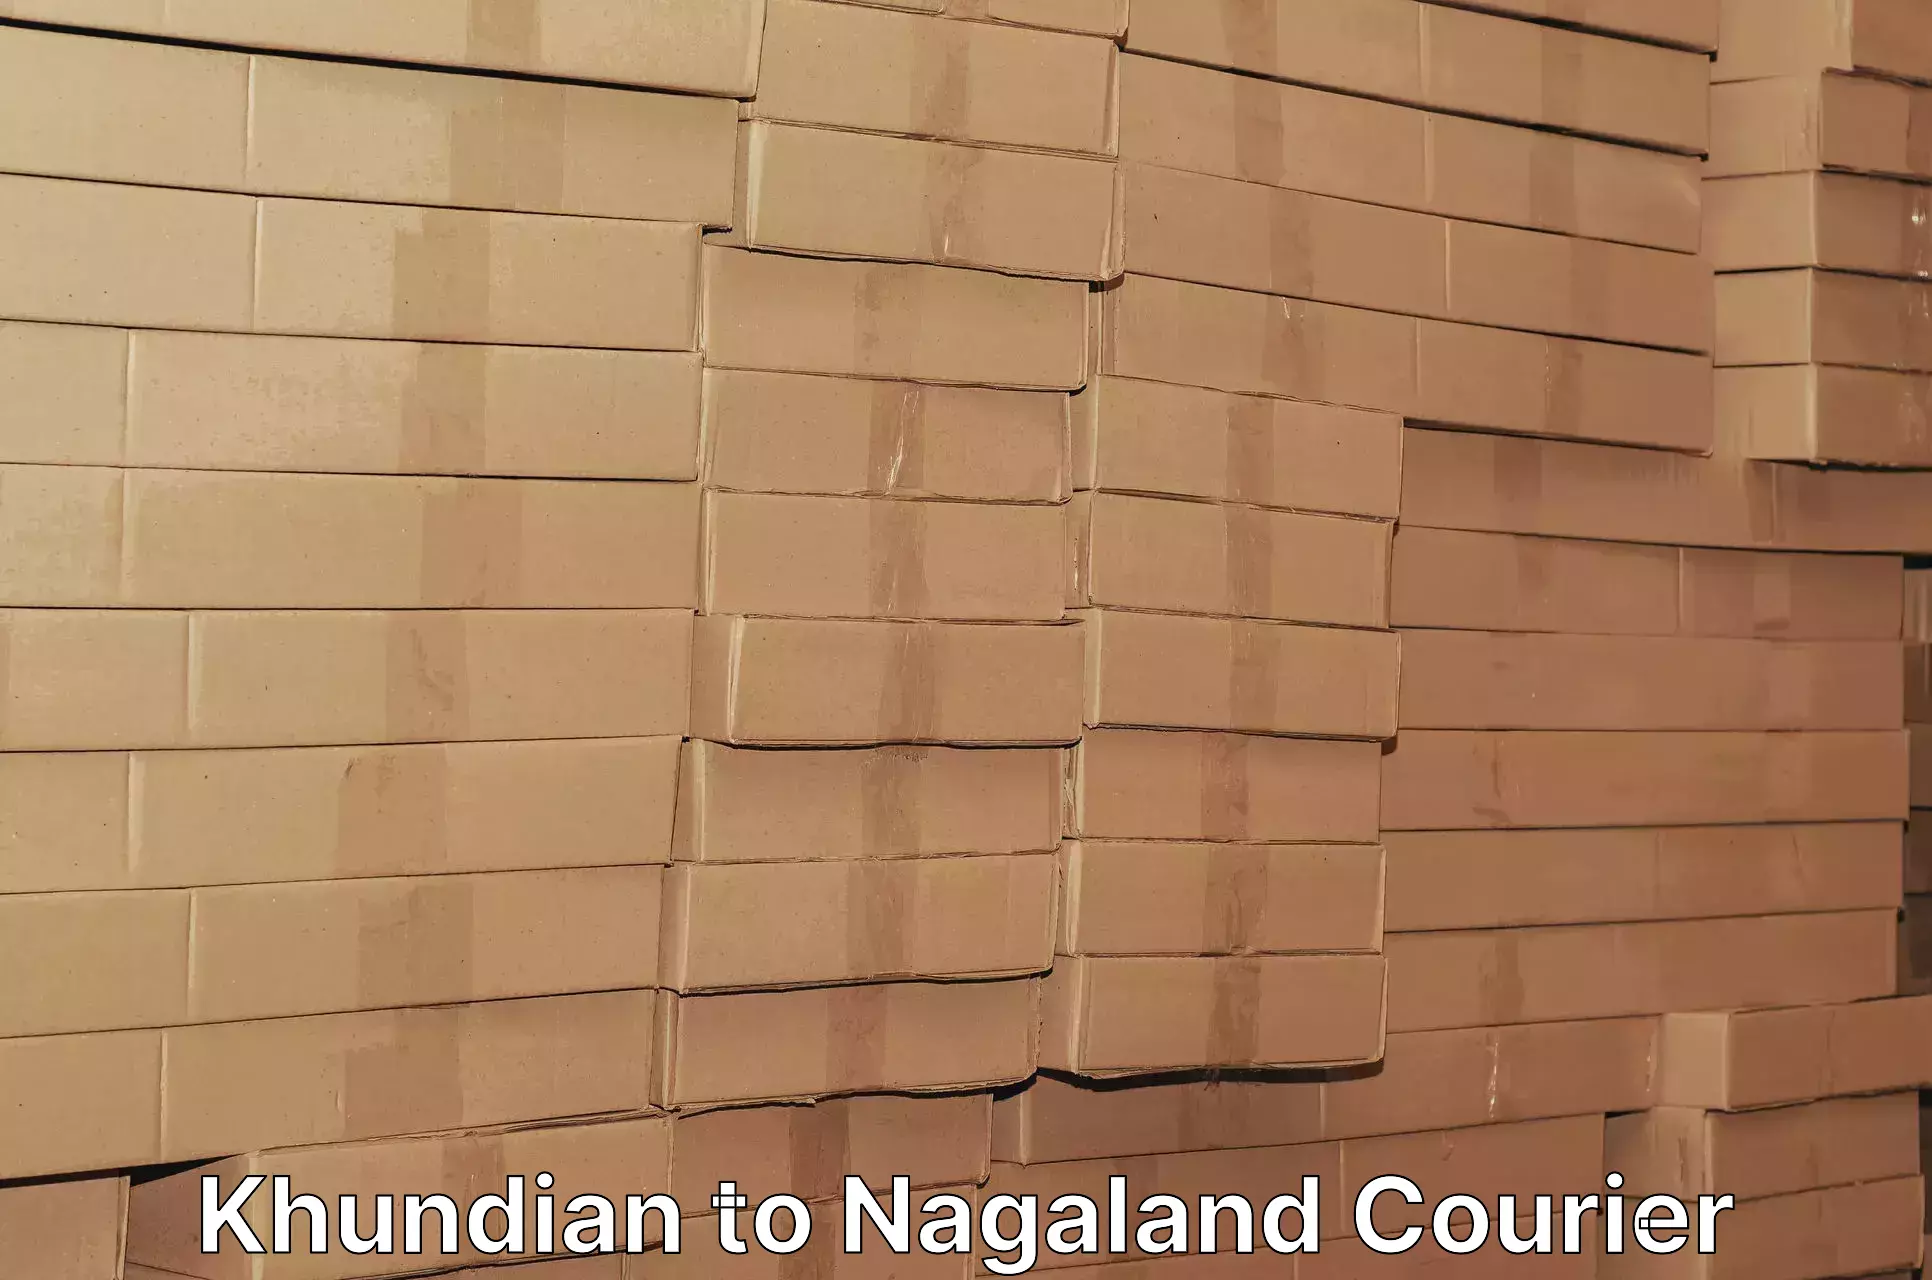 Expedited shipping methods Khundian to Nagaland